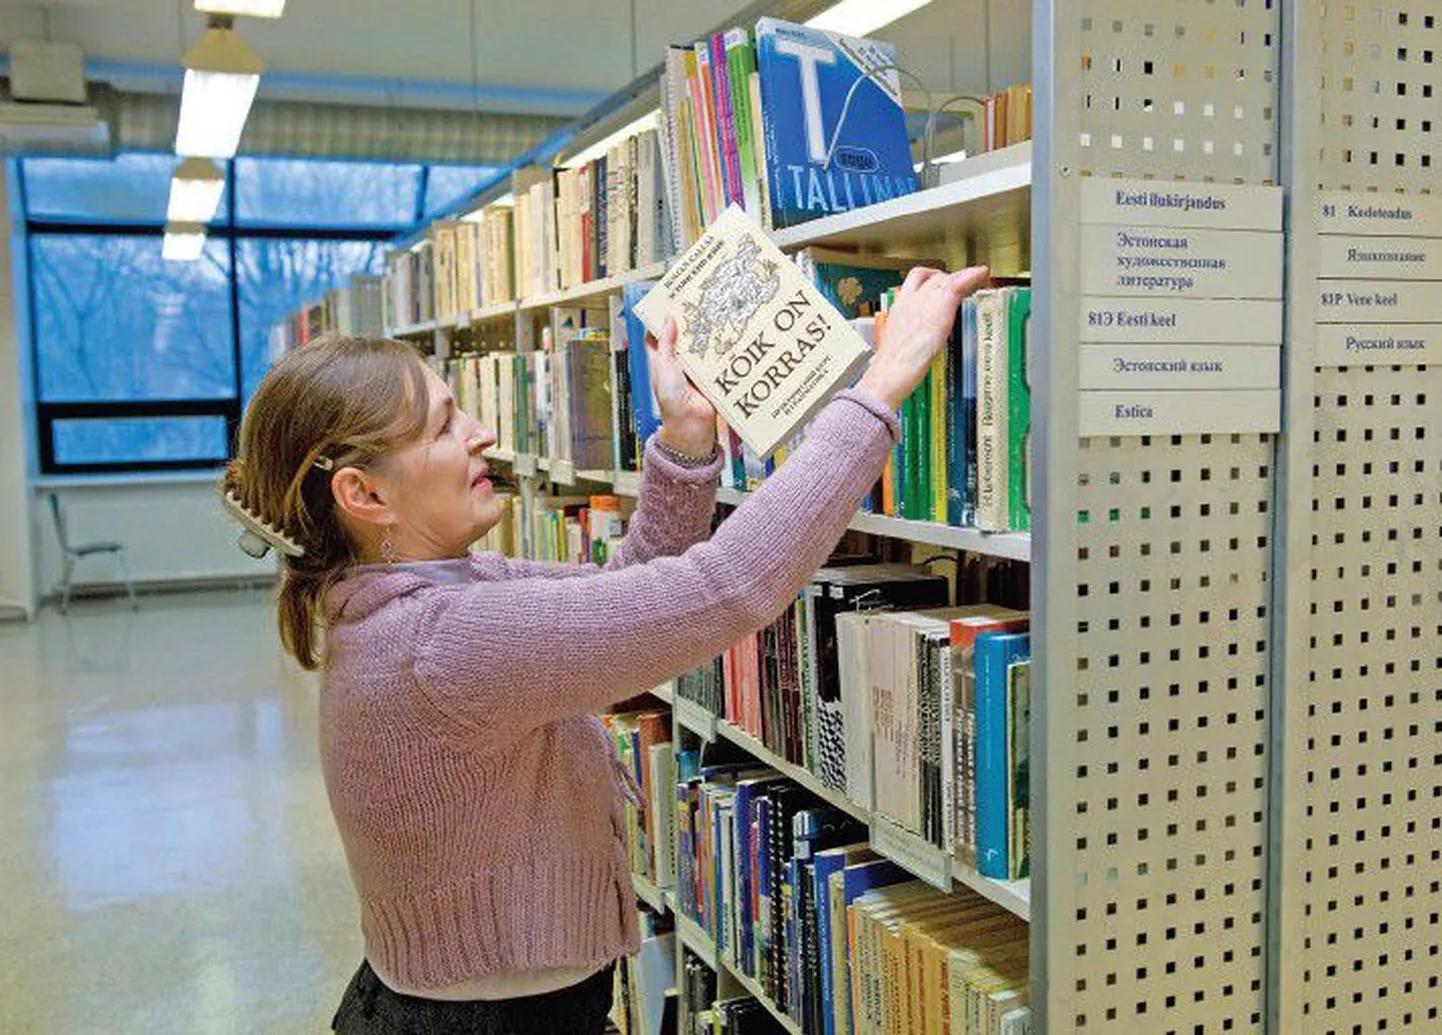 Старший библиотекарь отдела иностранной литературы Таллиннской центральной библиотеки Сийри Алвела говорит, что учебная литература по эстонскому языку — одна из самых востребованных.